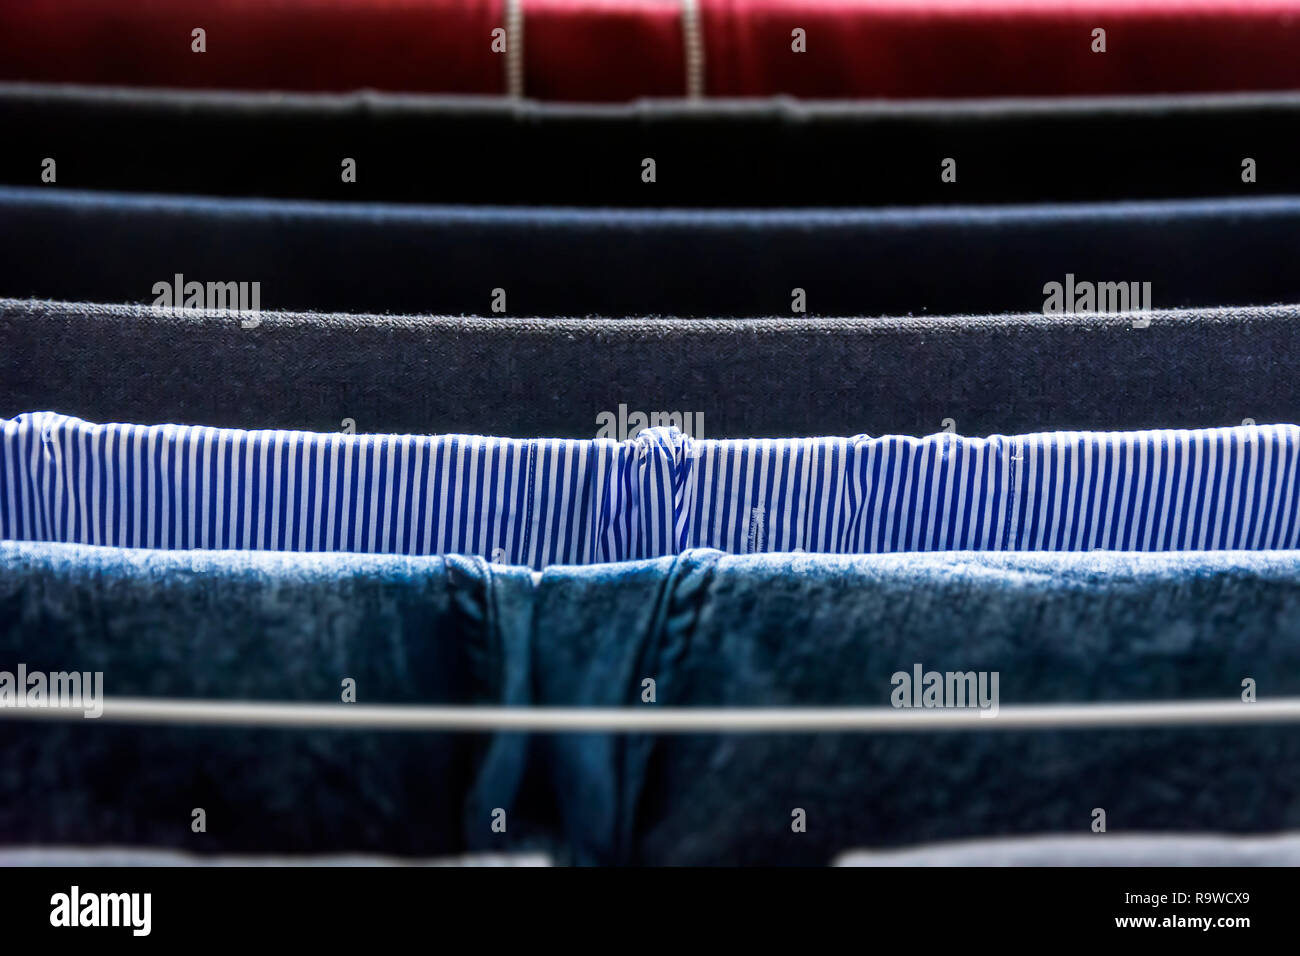 Différents types de vêtements suspendus à sécher sur un séchoir Banque D'Images